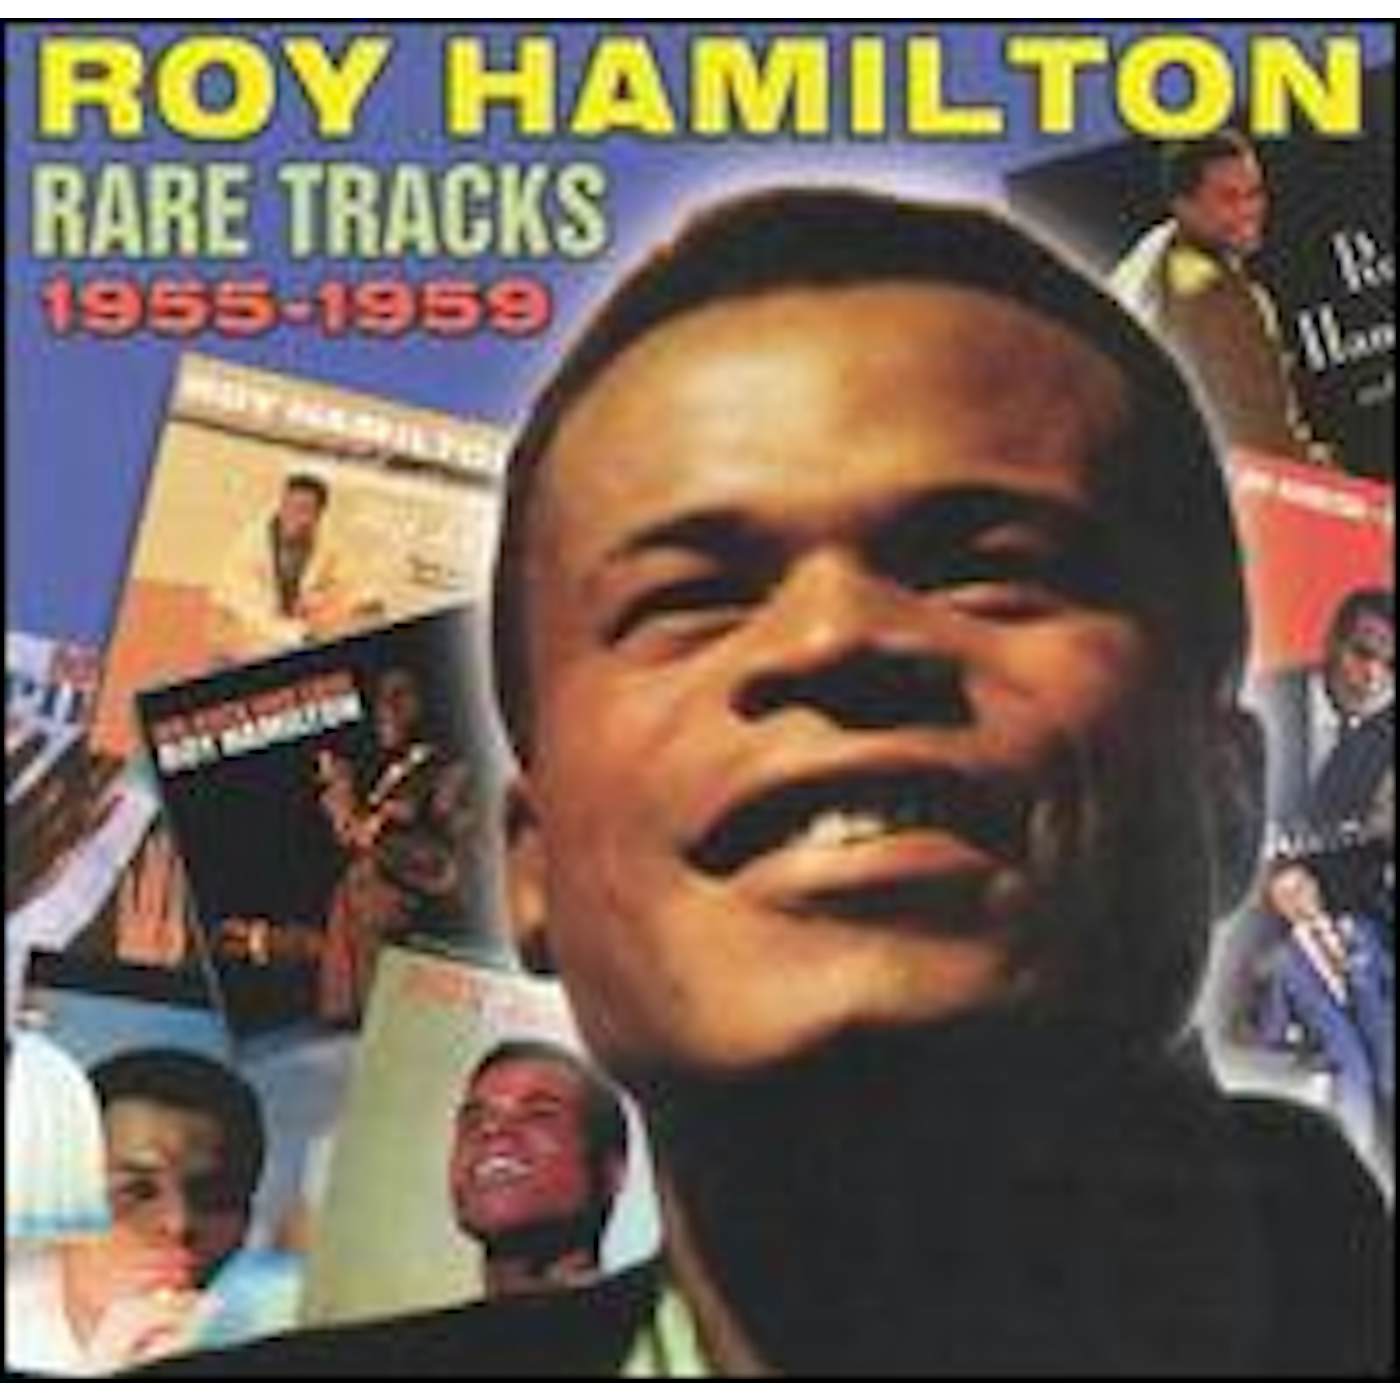 Roy Hamilton RARE TRACKS 1954-1959 CD